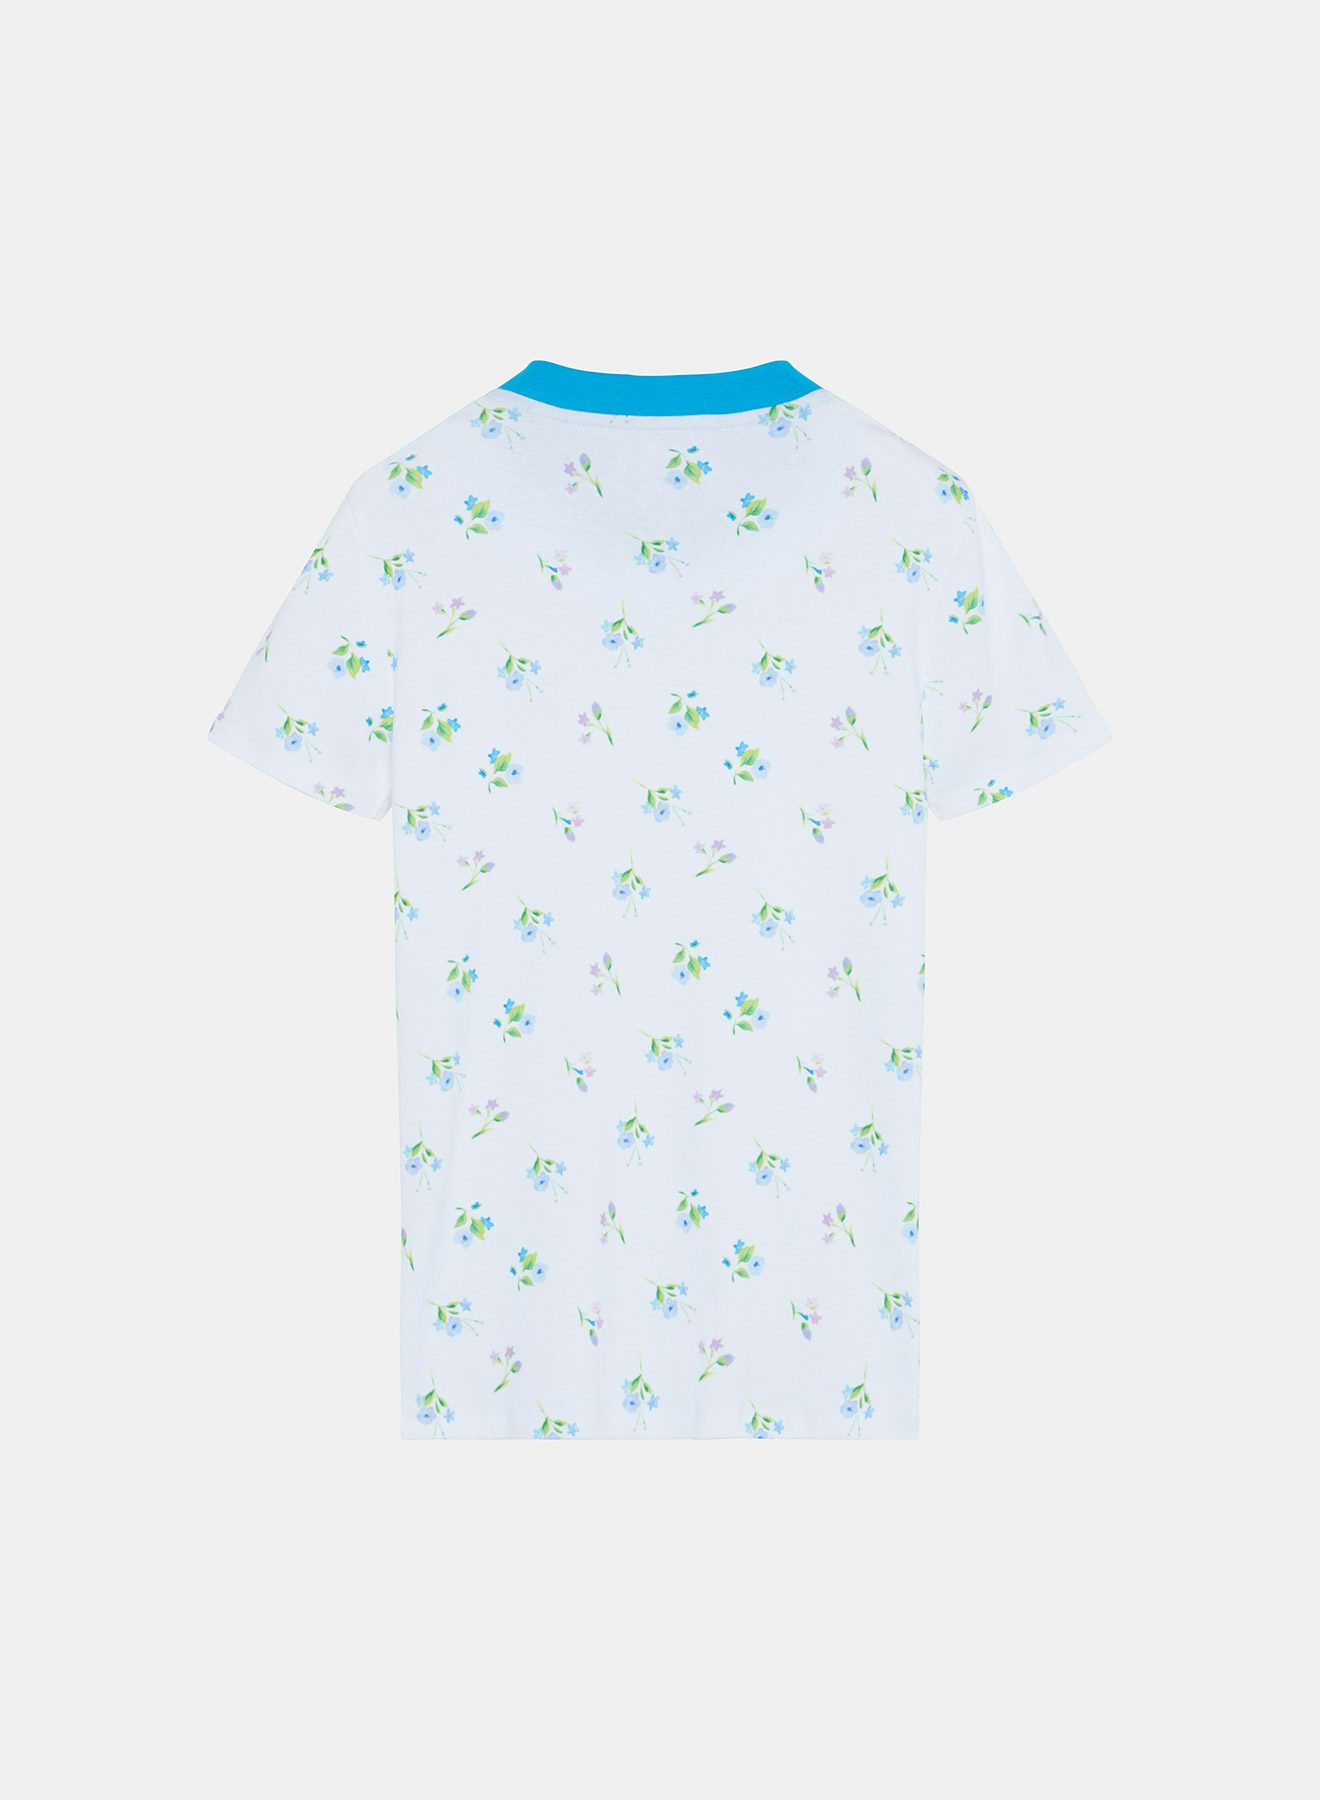 Camiseta de algodón con estampado floral - Nina Ricci